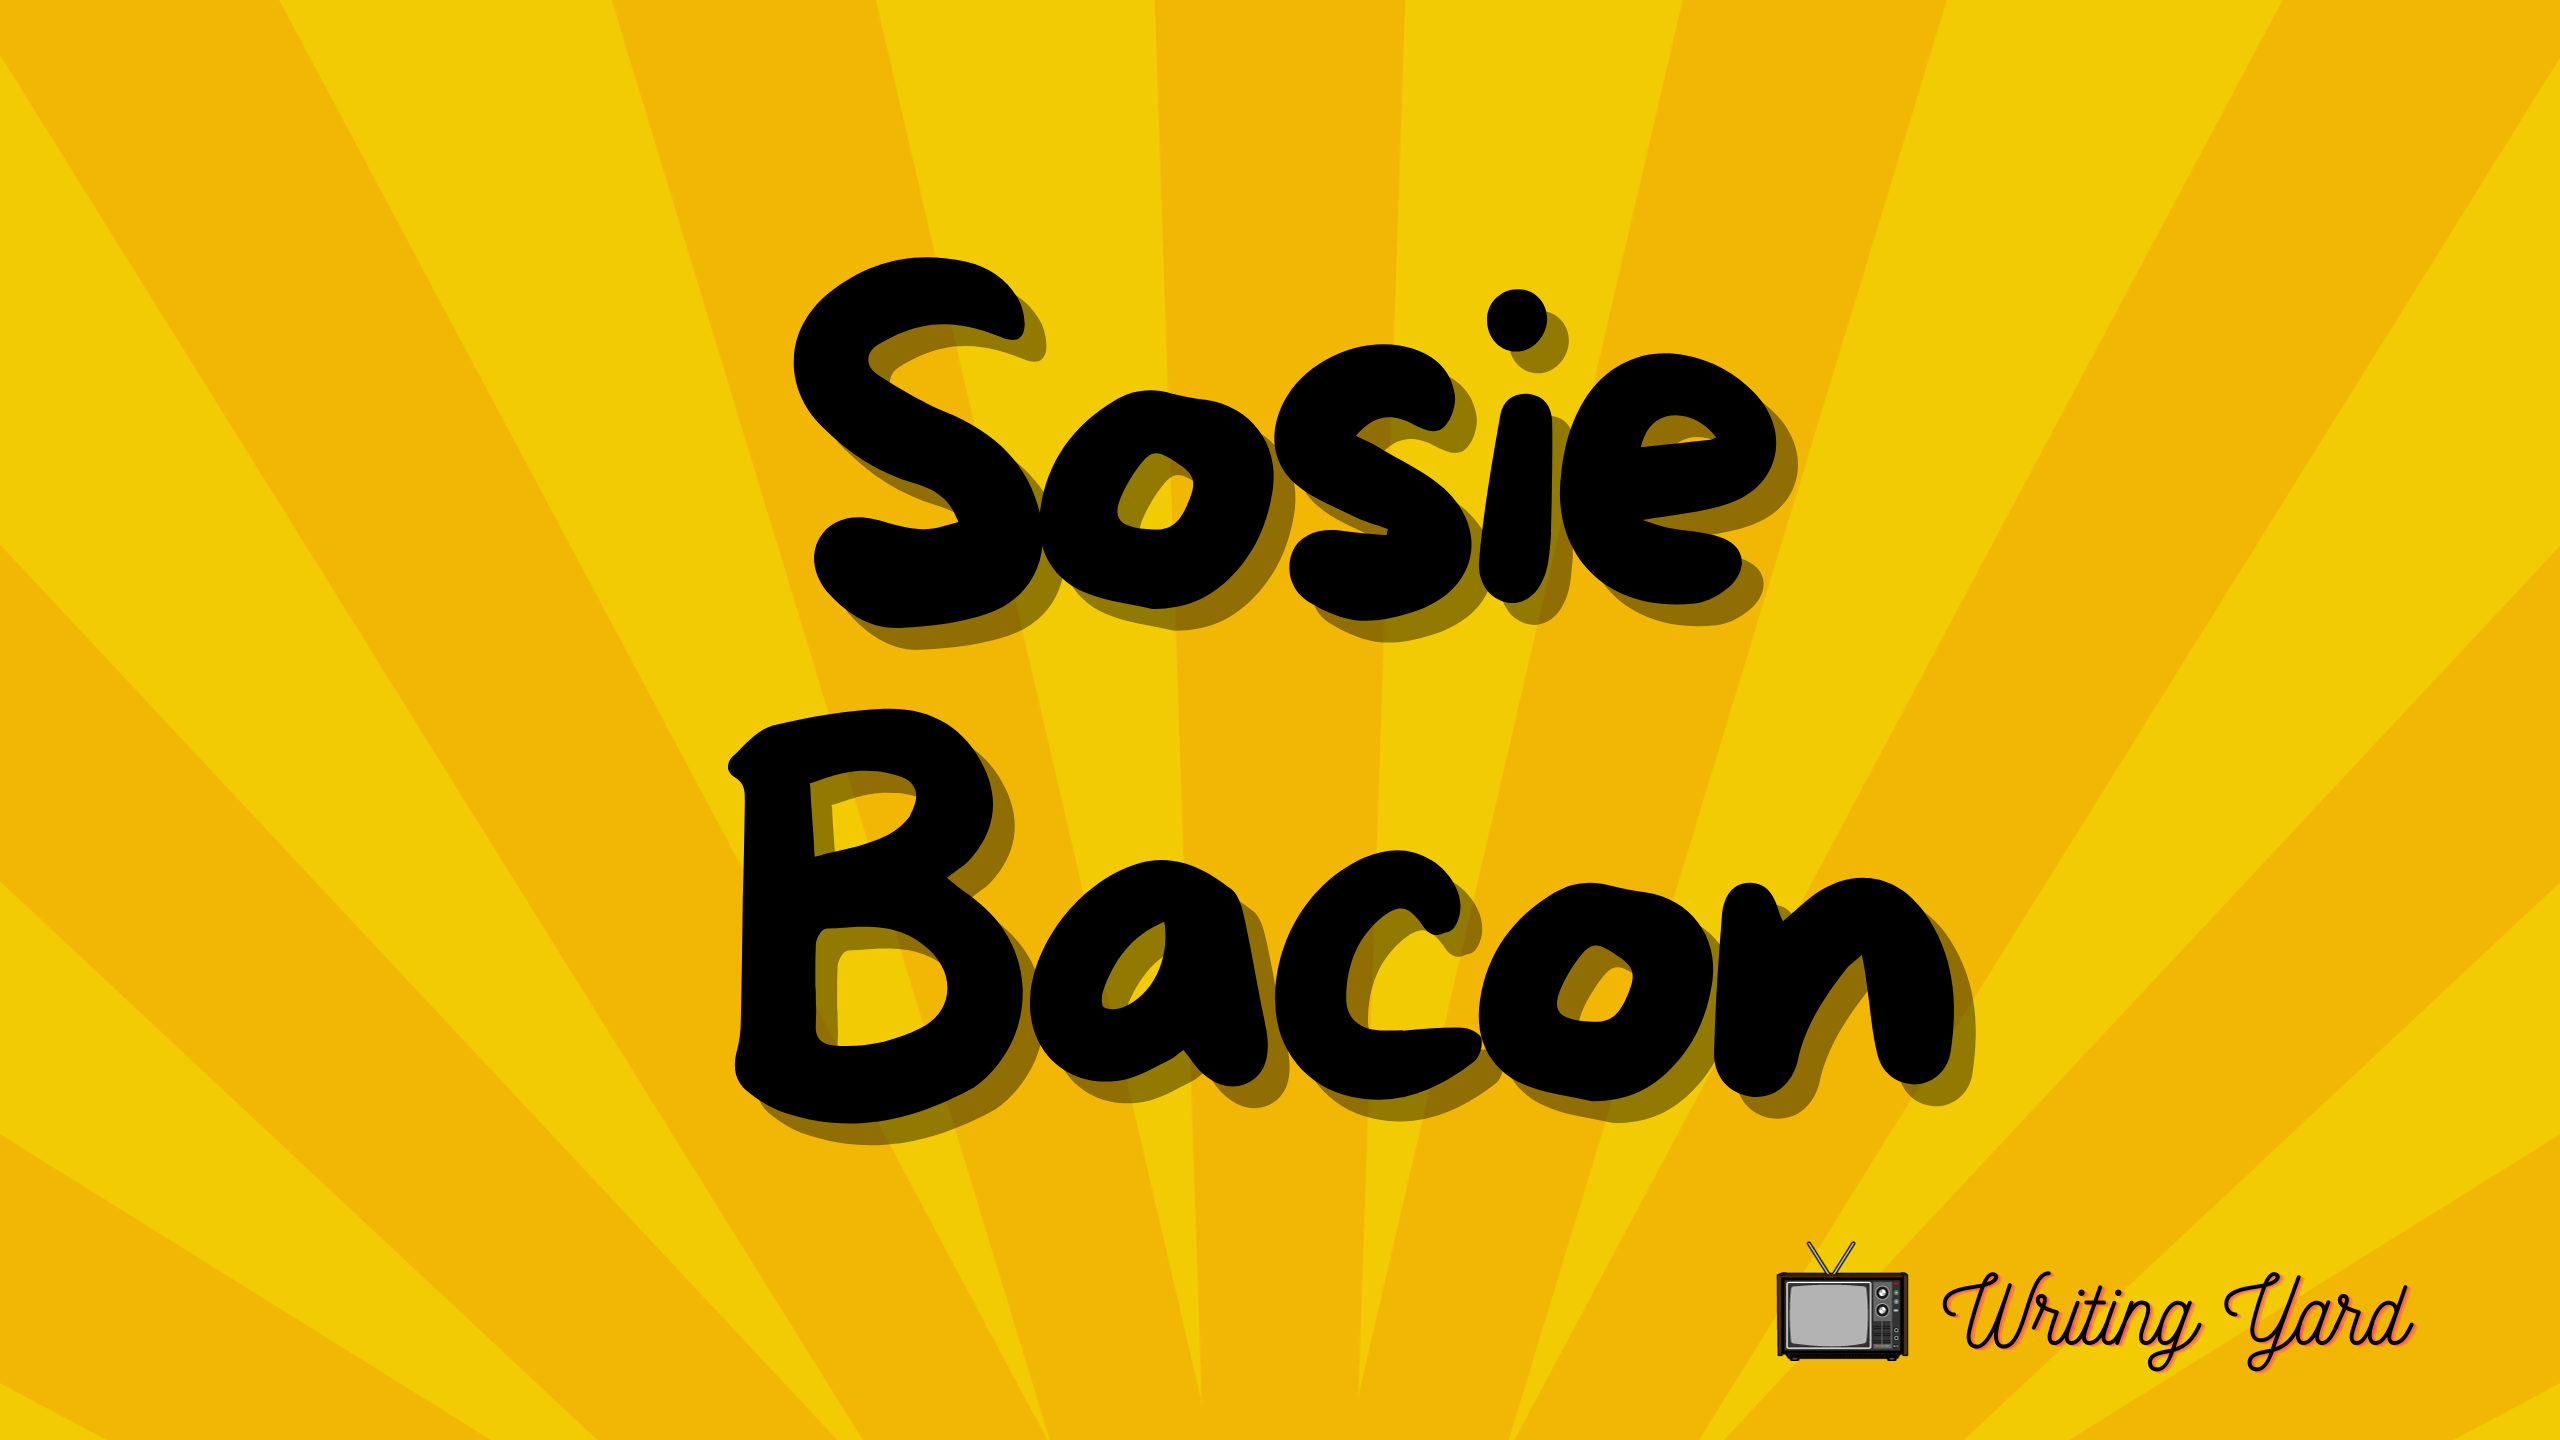 Sosie Bacon